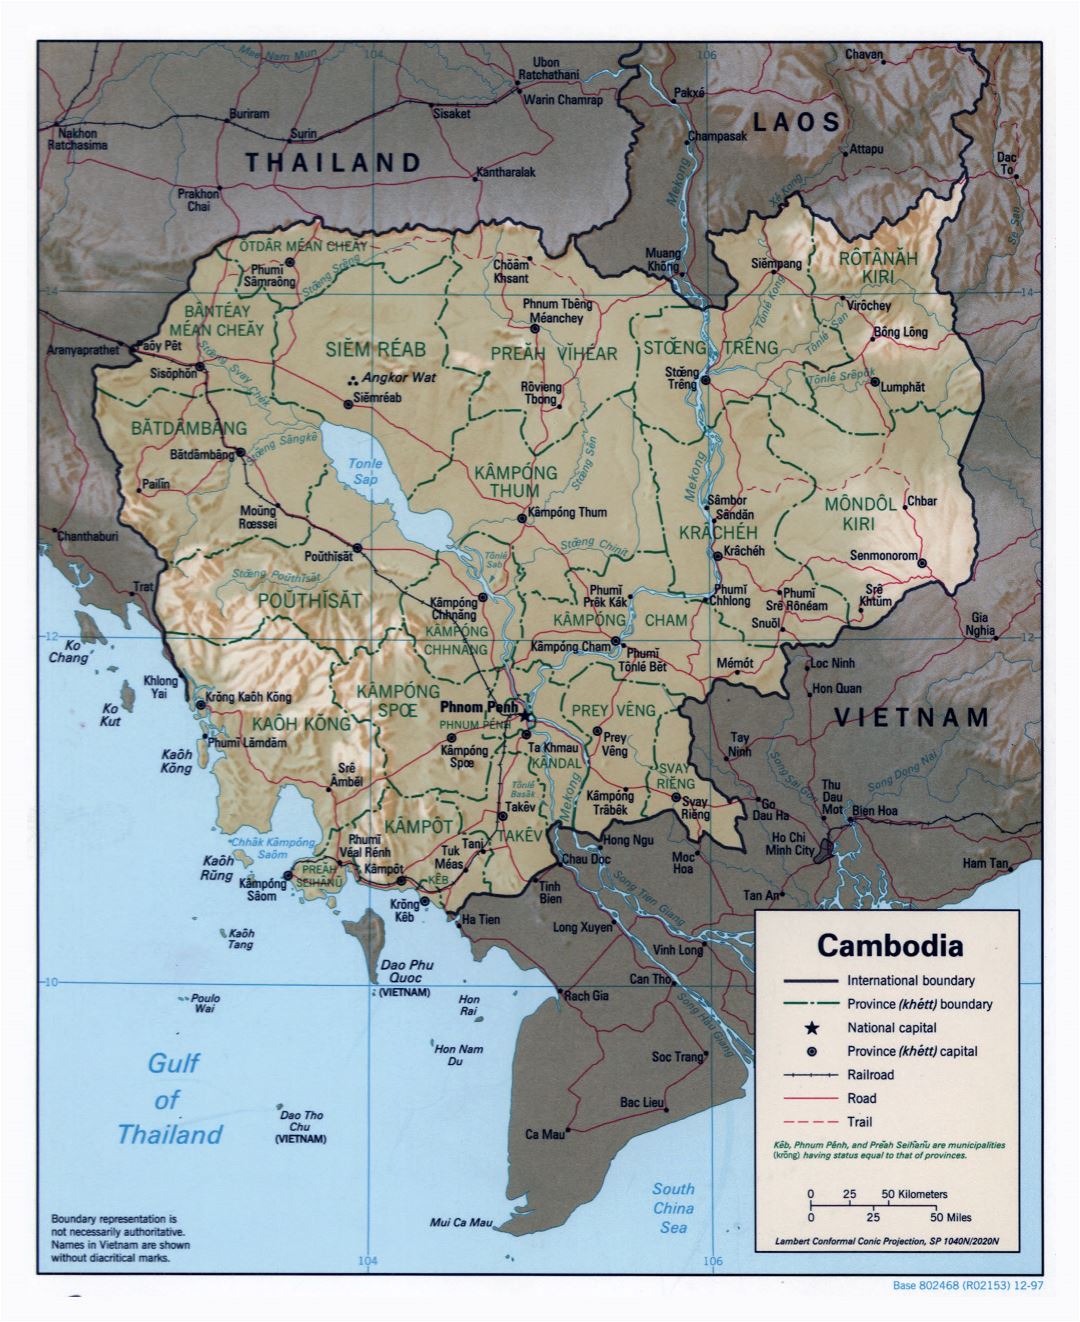 Grande detallado mapa político y administrativo de Camboya con socorro, carreteras, ferrocarriles y principales ciudades - 1997